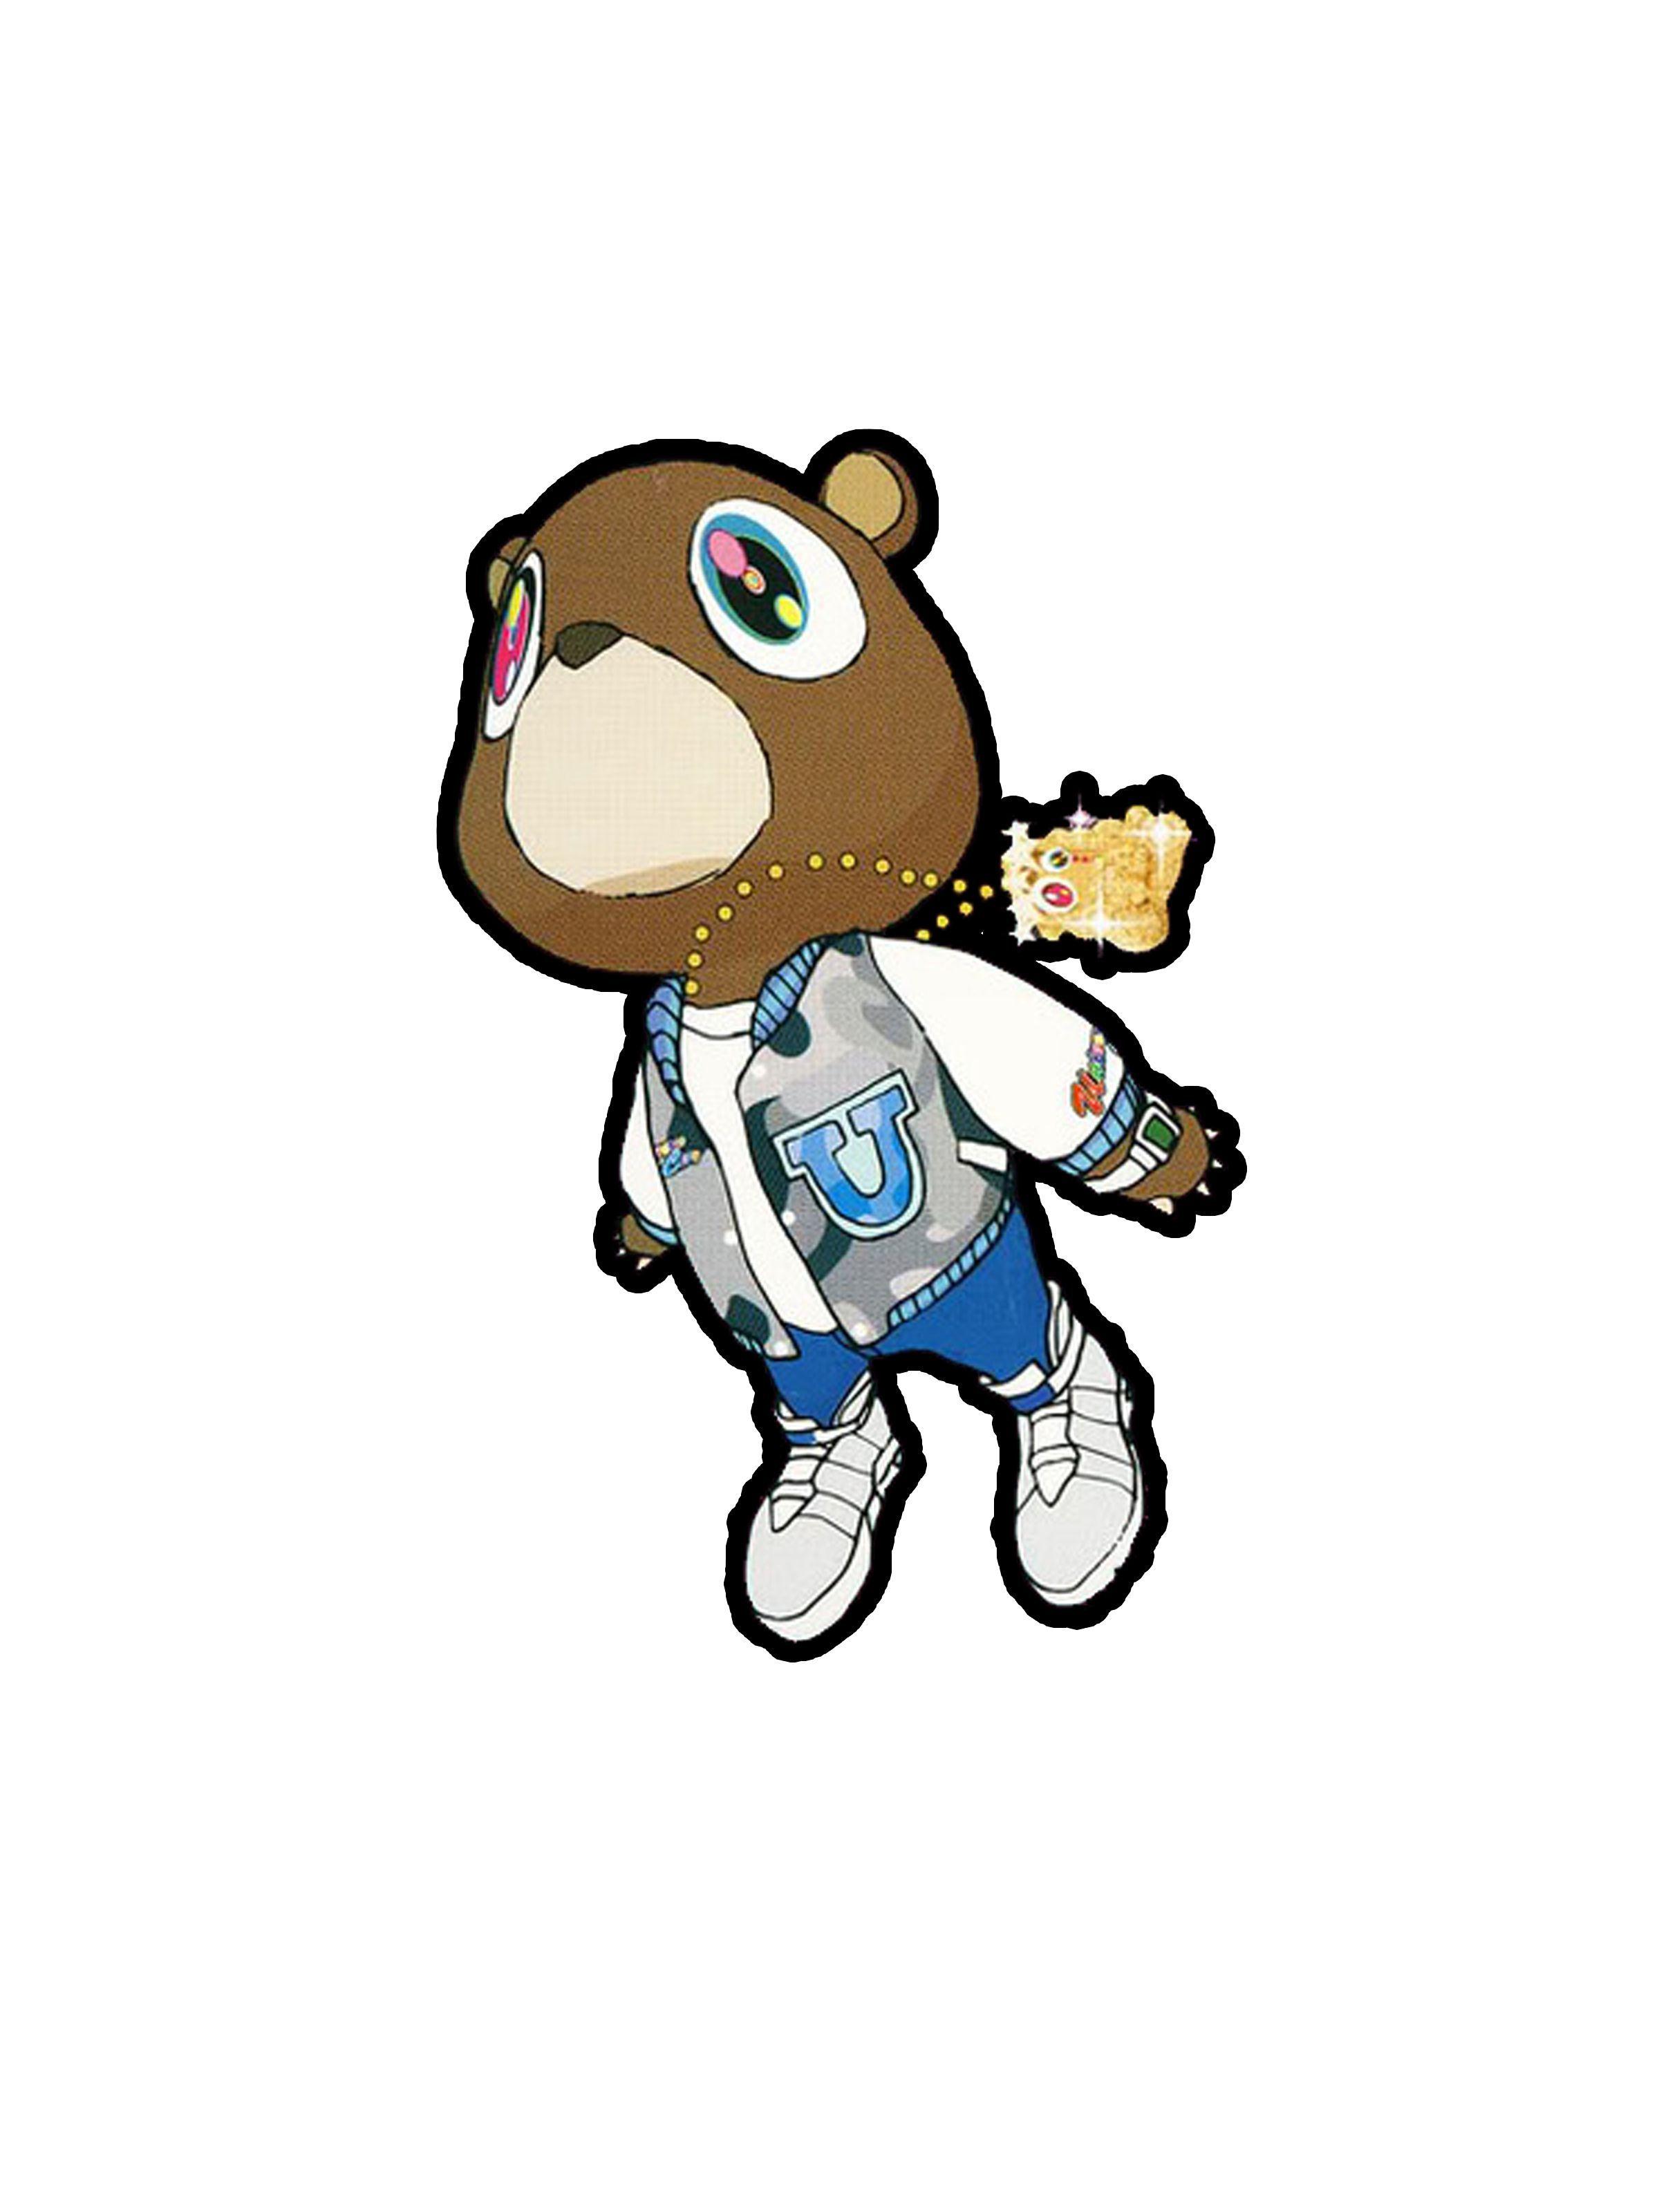 Yeezy Bear Logo - Kanye West Graduation Bear. inked skin. Kanye